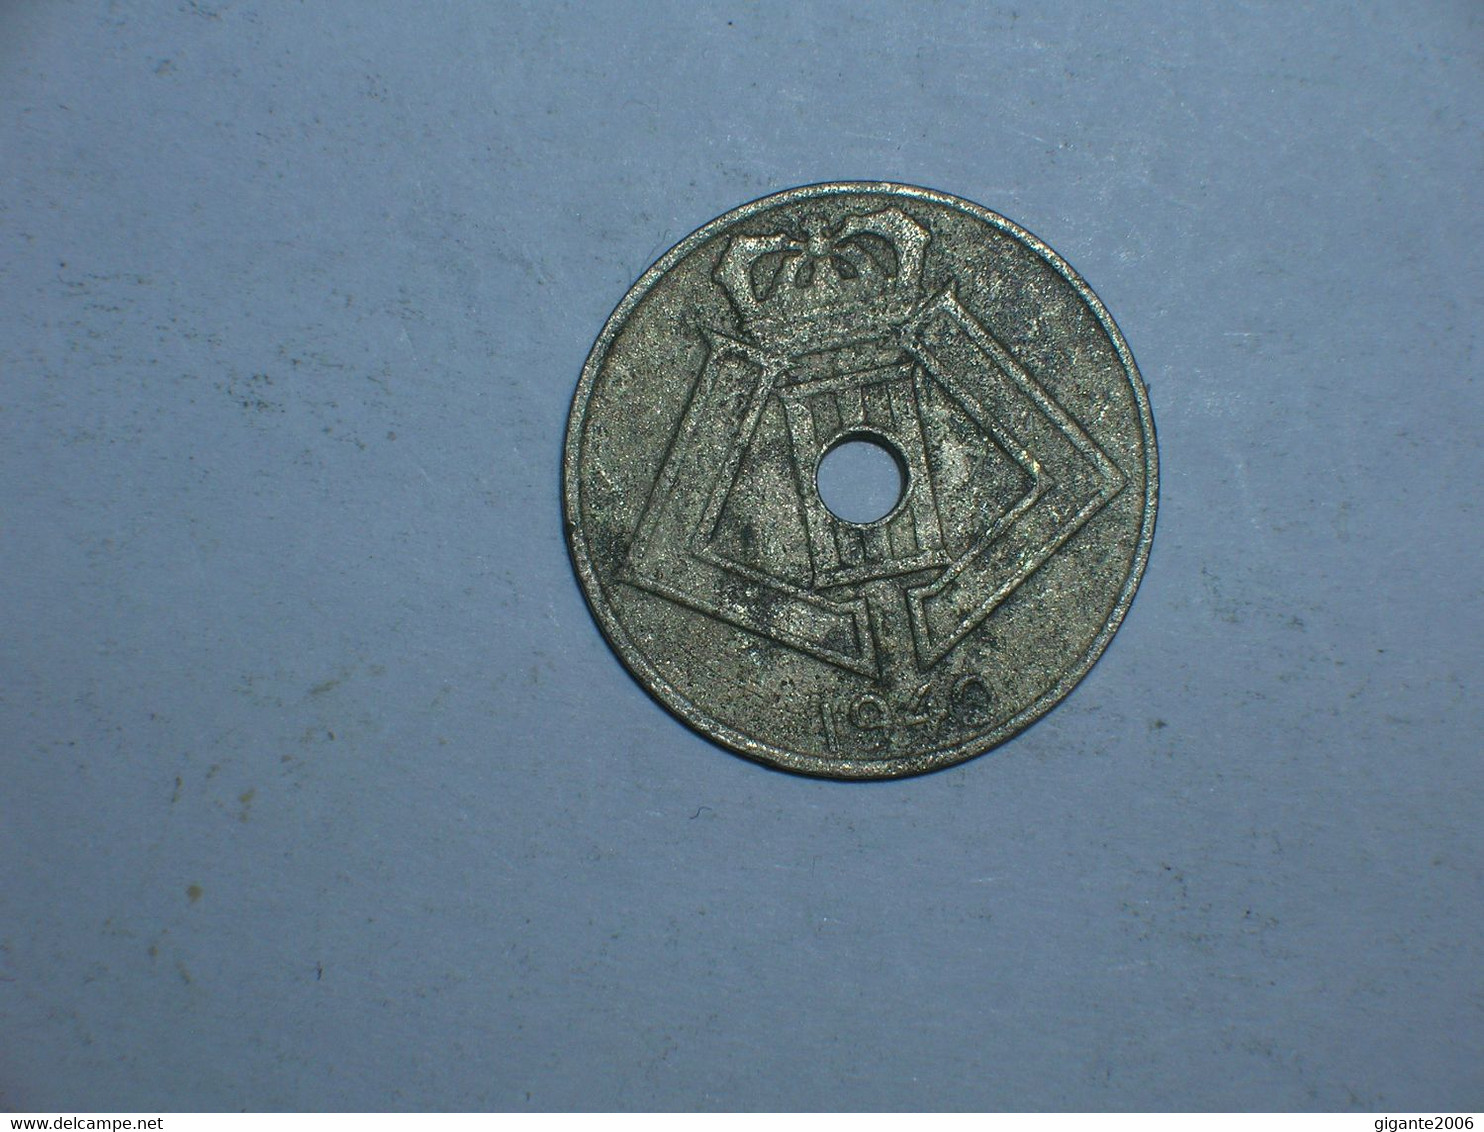 BELGICA 5 CENTIMOS 1940 FL (9120) - 5 Centimes